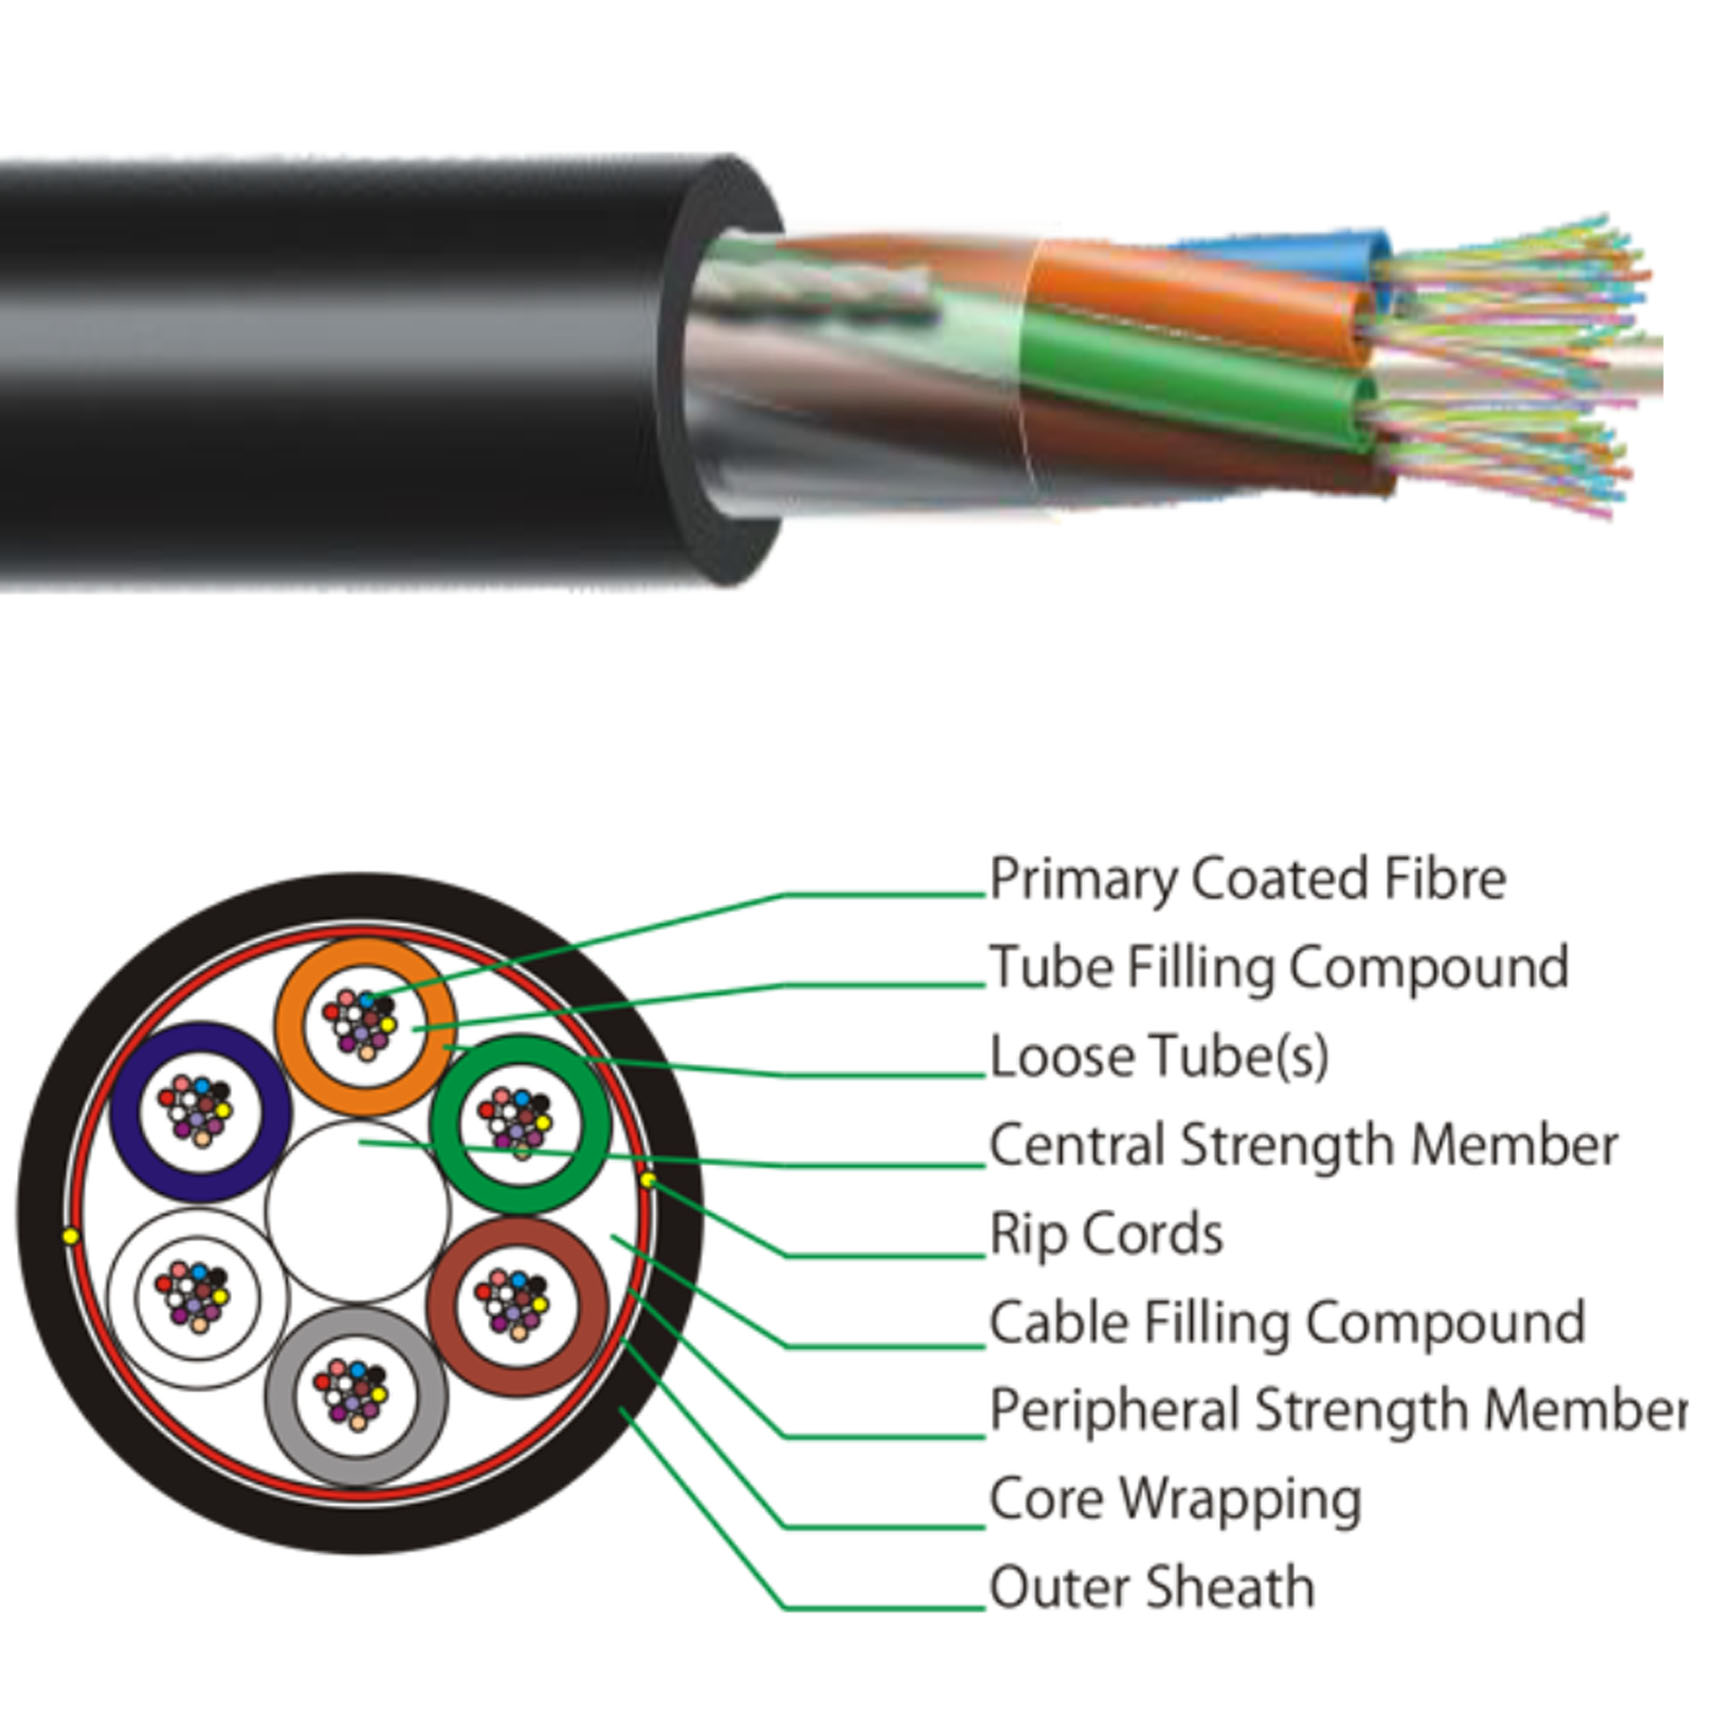 Cable optique 144 FO Monomode (SM) G652D Non armé - BABAYAMA Fibres  Optiques et FTTH Location Vente